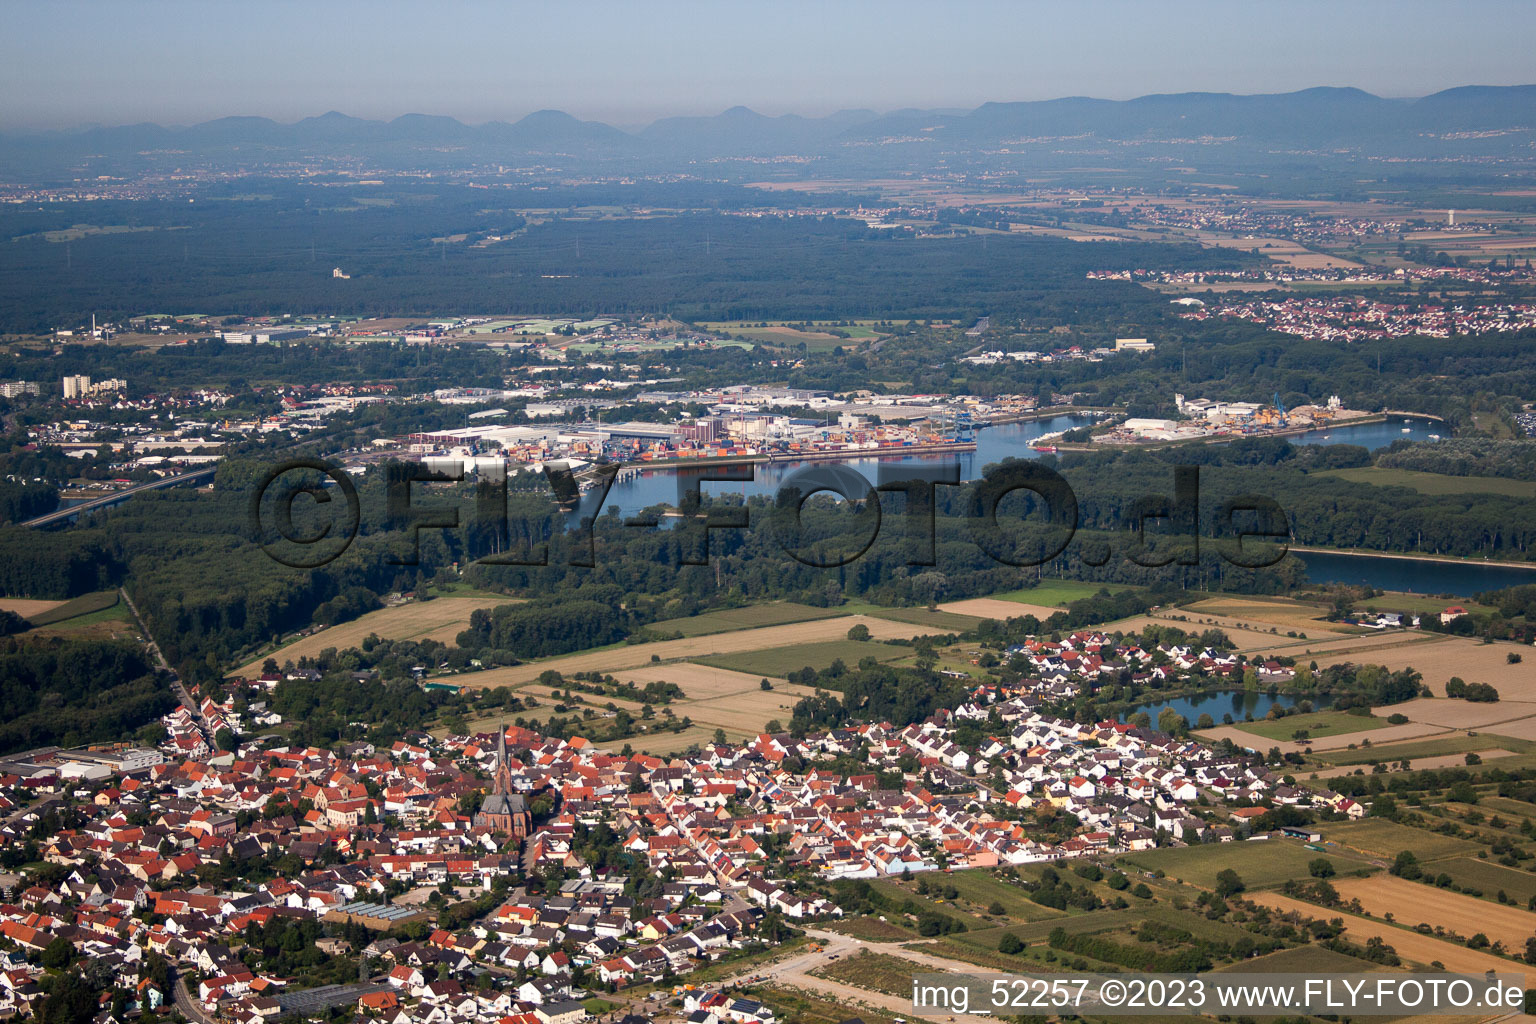 Quartier Rheinsheim in Philippsburg dans le département Bade-Wurtemberg, Allemagne vue du ciel